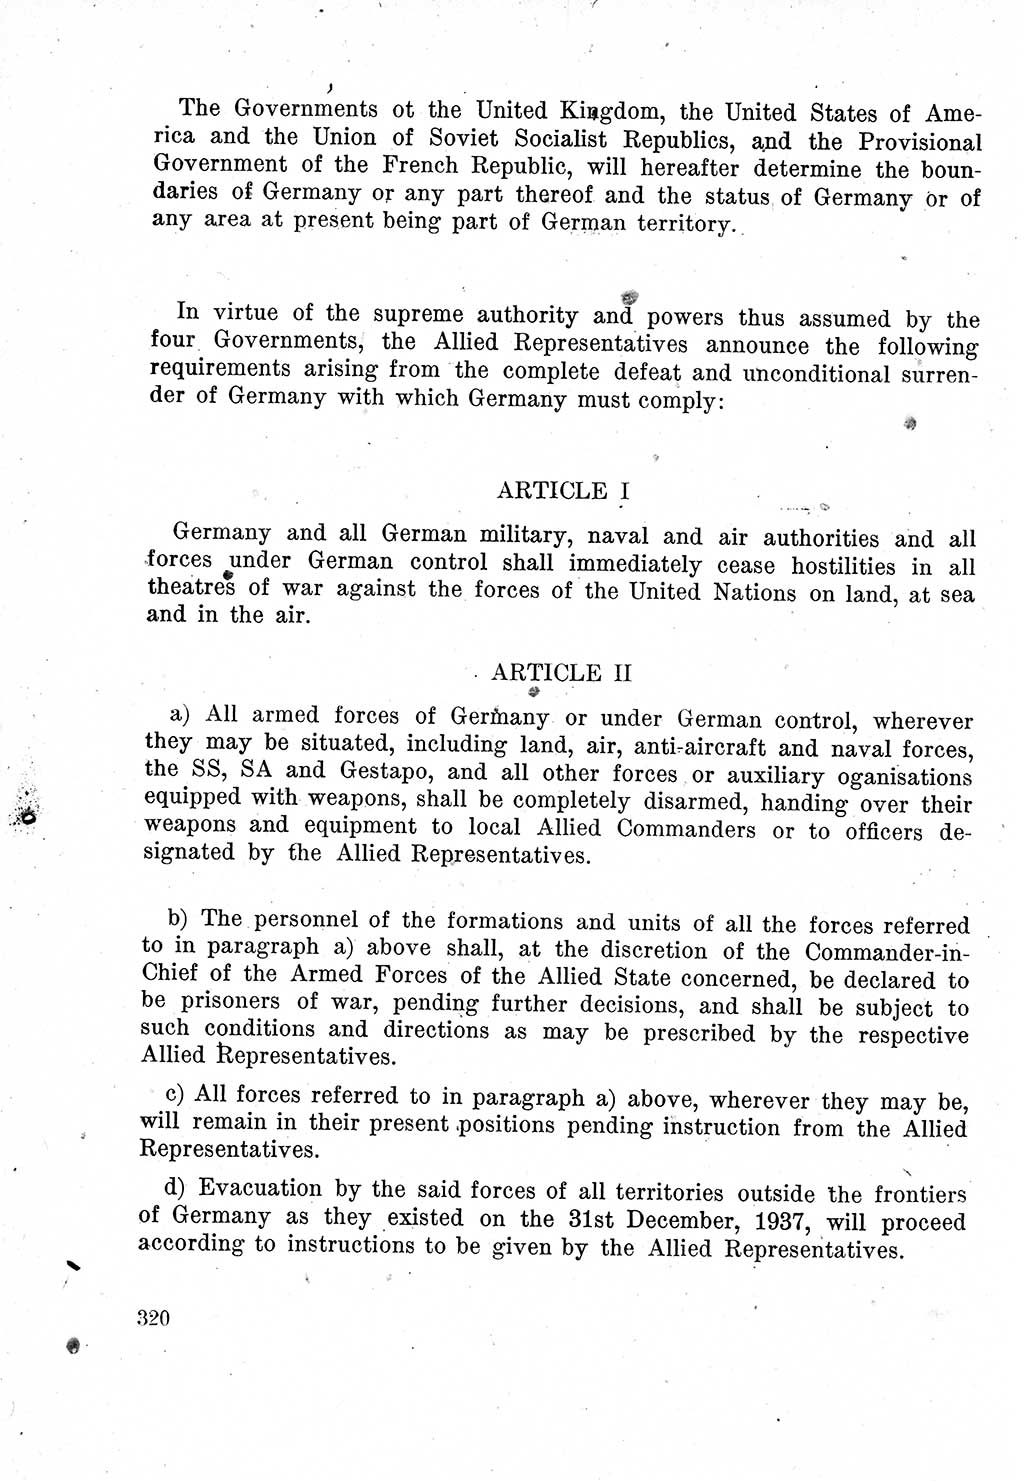 Das Recht der Besatzungsmacht (Deutschland), Proklamationen, Deklerationen, Verordnungen, Gesetze und Bekanntmachungen 1947, Seite 320 (R. Bes. Dtl. 1947, S. 320)